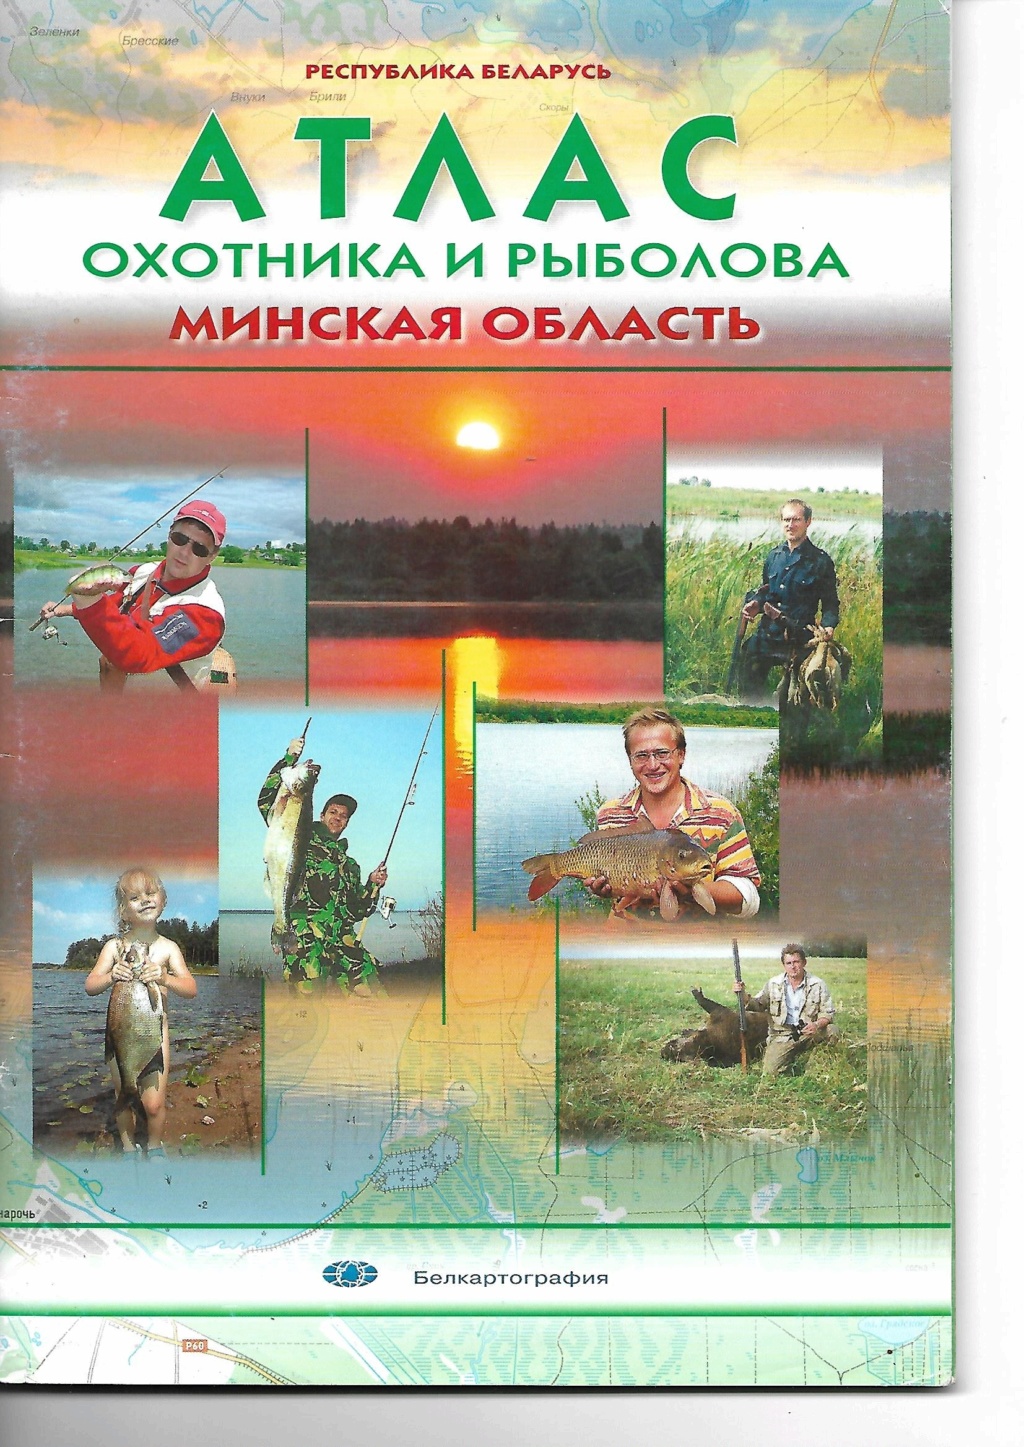 Prospection d'un pays féerique : La Biélorussie ! - Page 2 Atlas_14